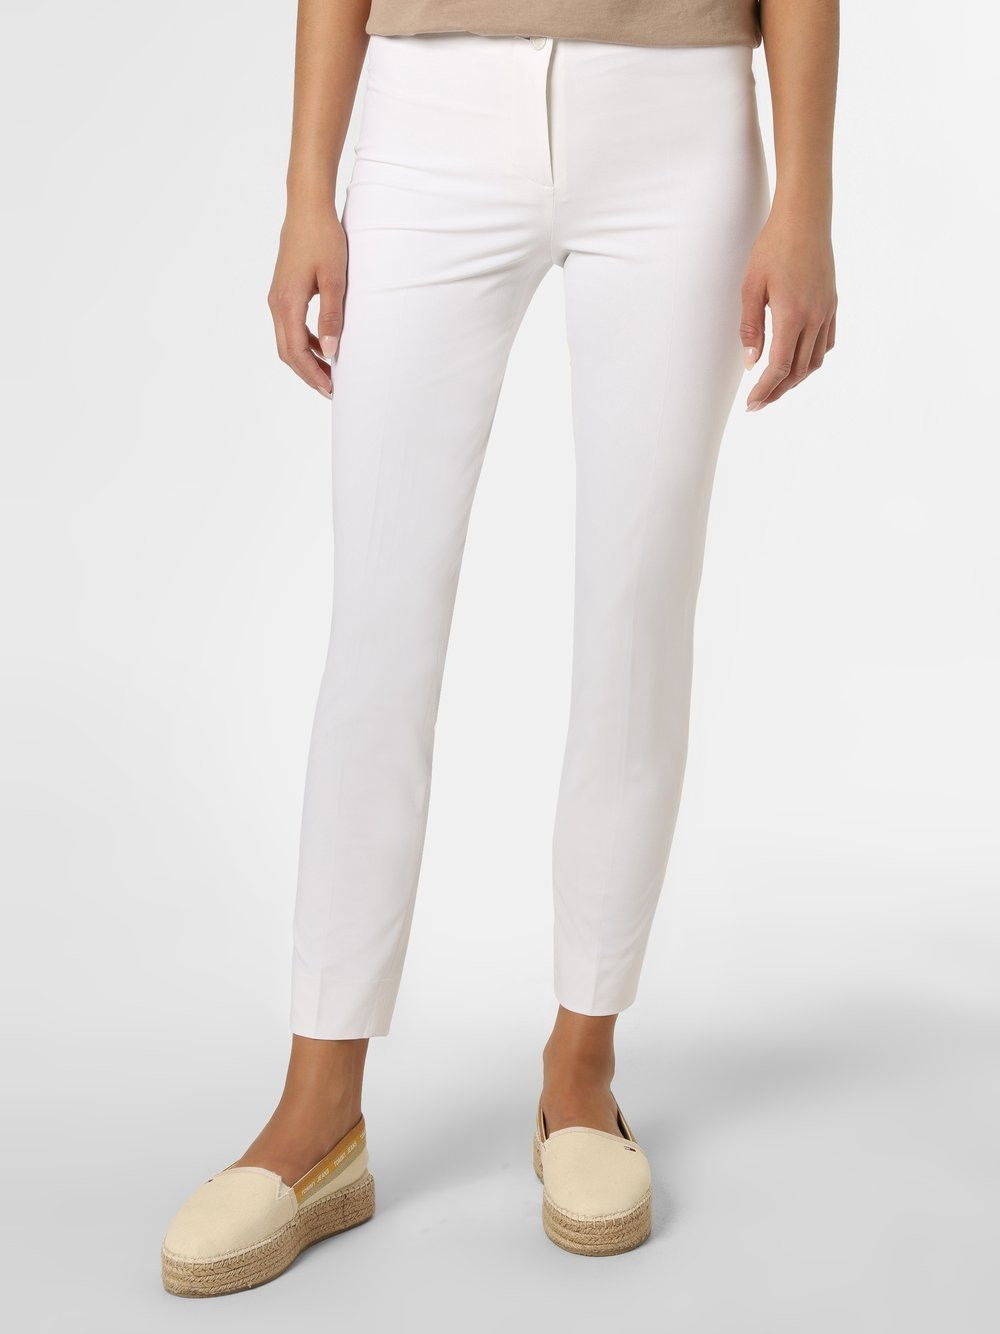 Cambio Cambio - Spodnie damskie  Ros, biały